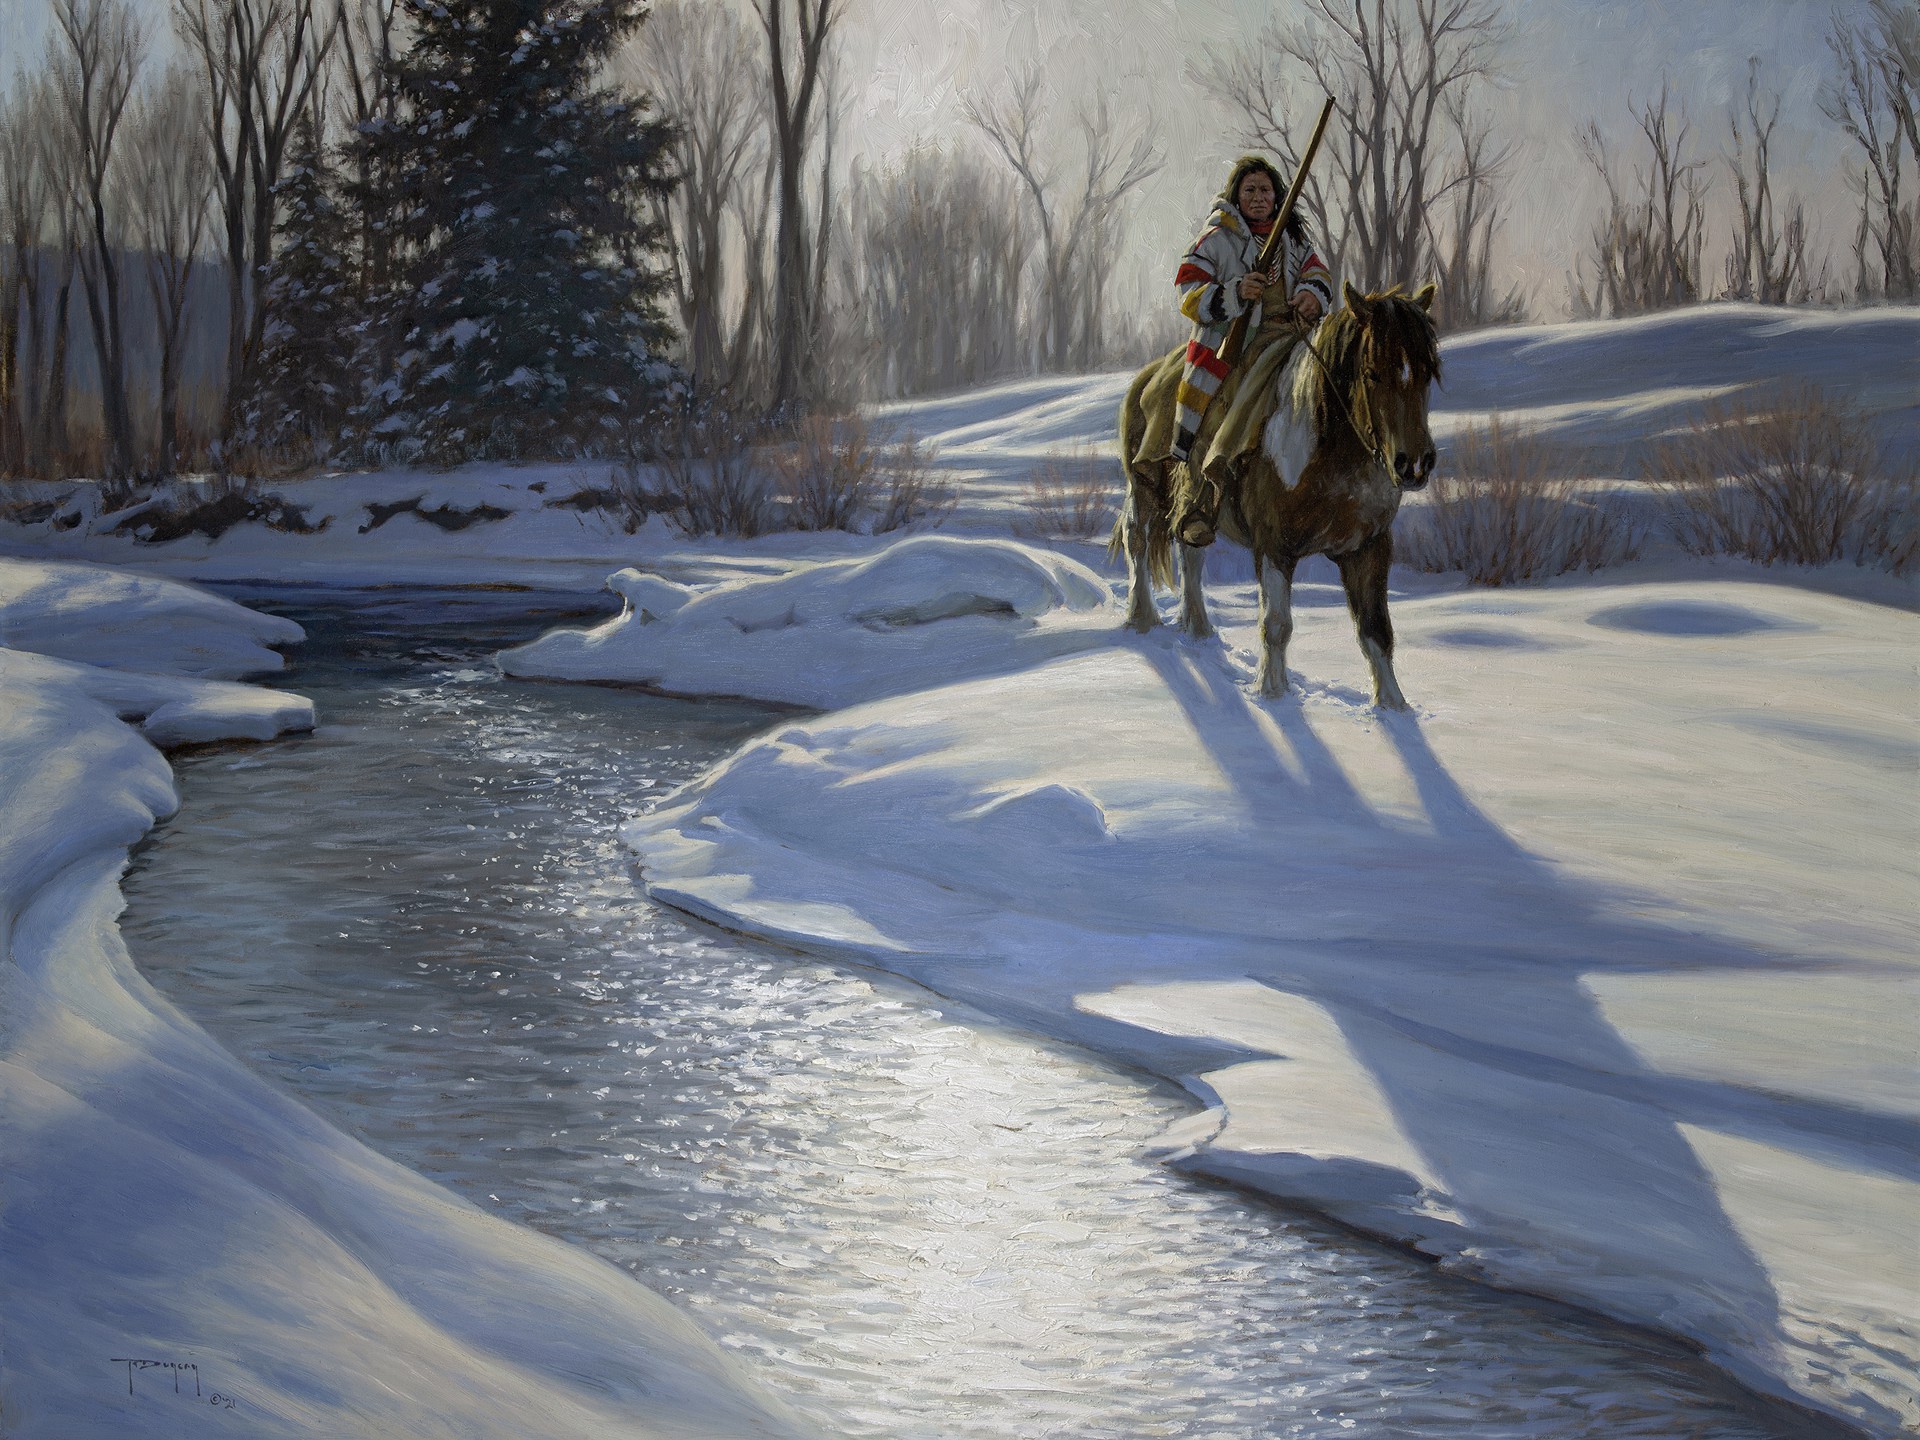 Winter's Light by Robert Duncan